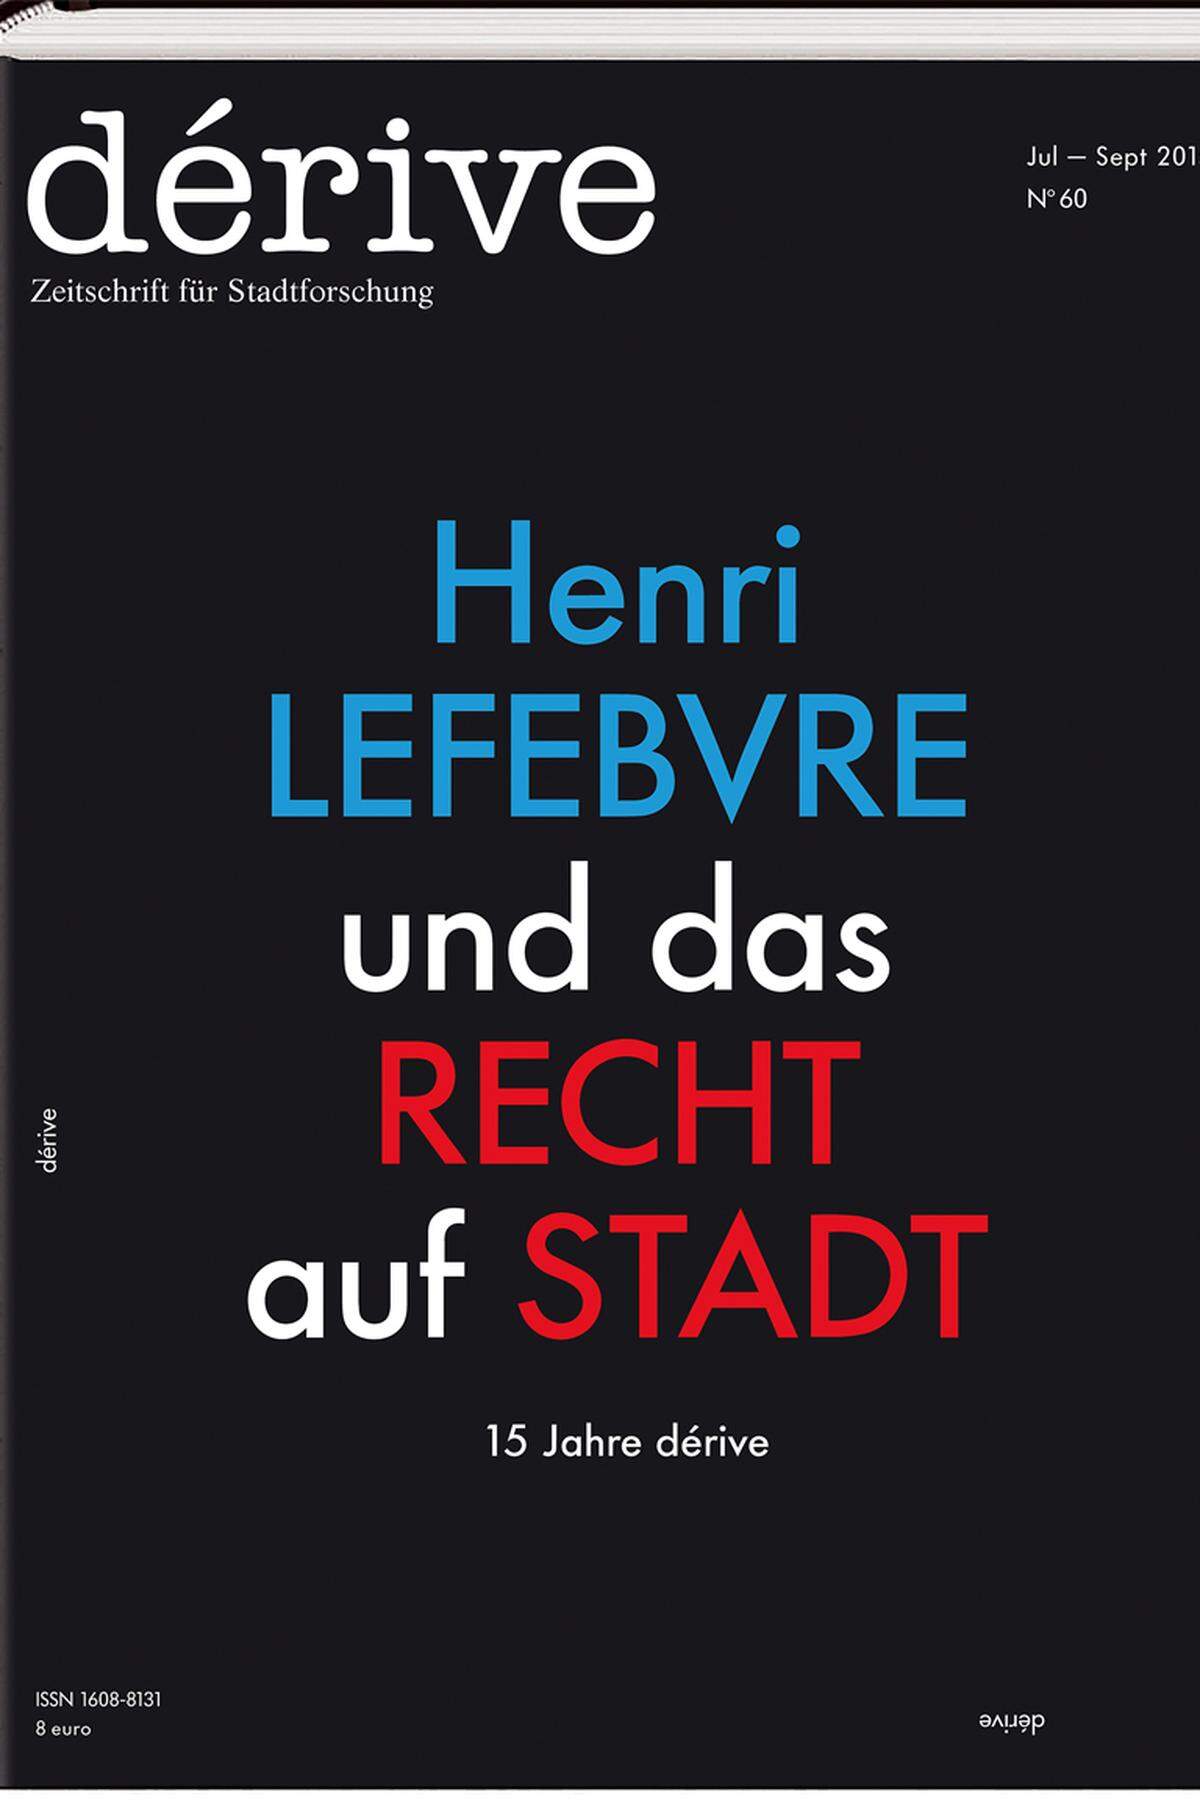 Dérive und mit ihr die publizistisch-kritische Auseinandersetzung mit der Stadt ist 15 Jahre alt. Zur 60. Ausgabe haben sich Christoph Laimer und Elke Rauth für ihre Zeitschrift für Stadtforschung „Henri Lefebvre und das Recht auf Stadt“ als Jubiläumsthema ausgesucht.